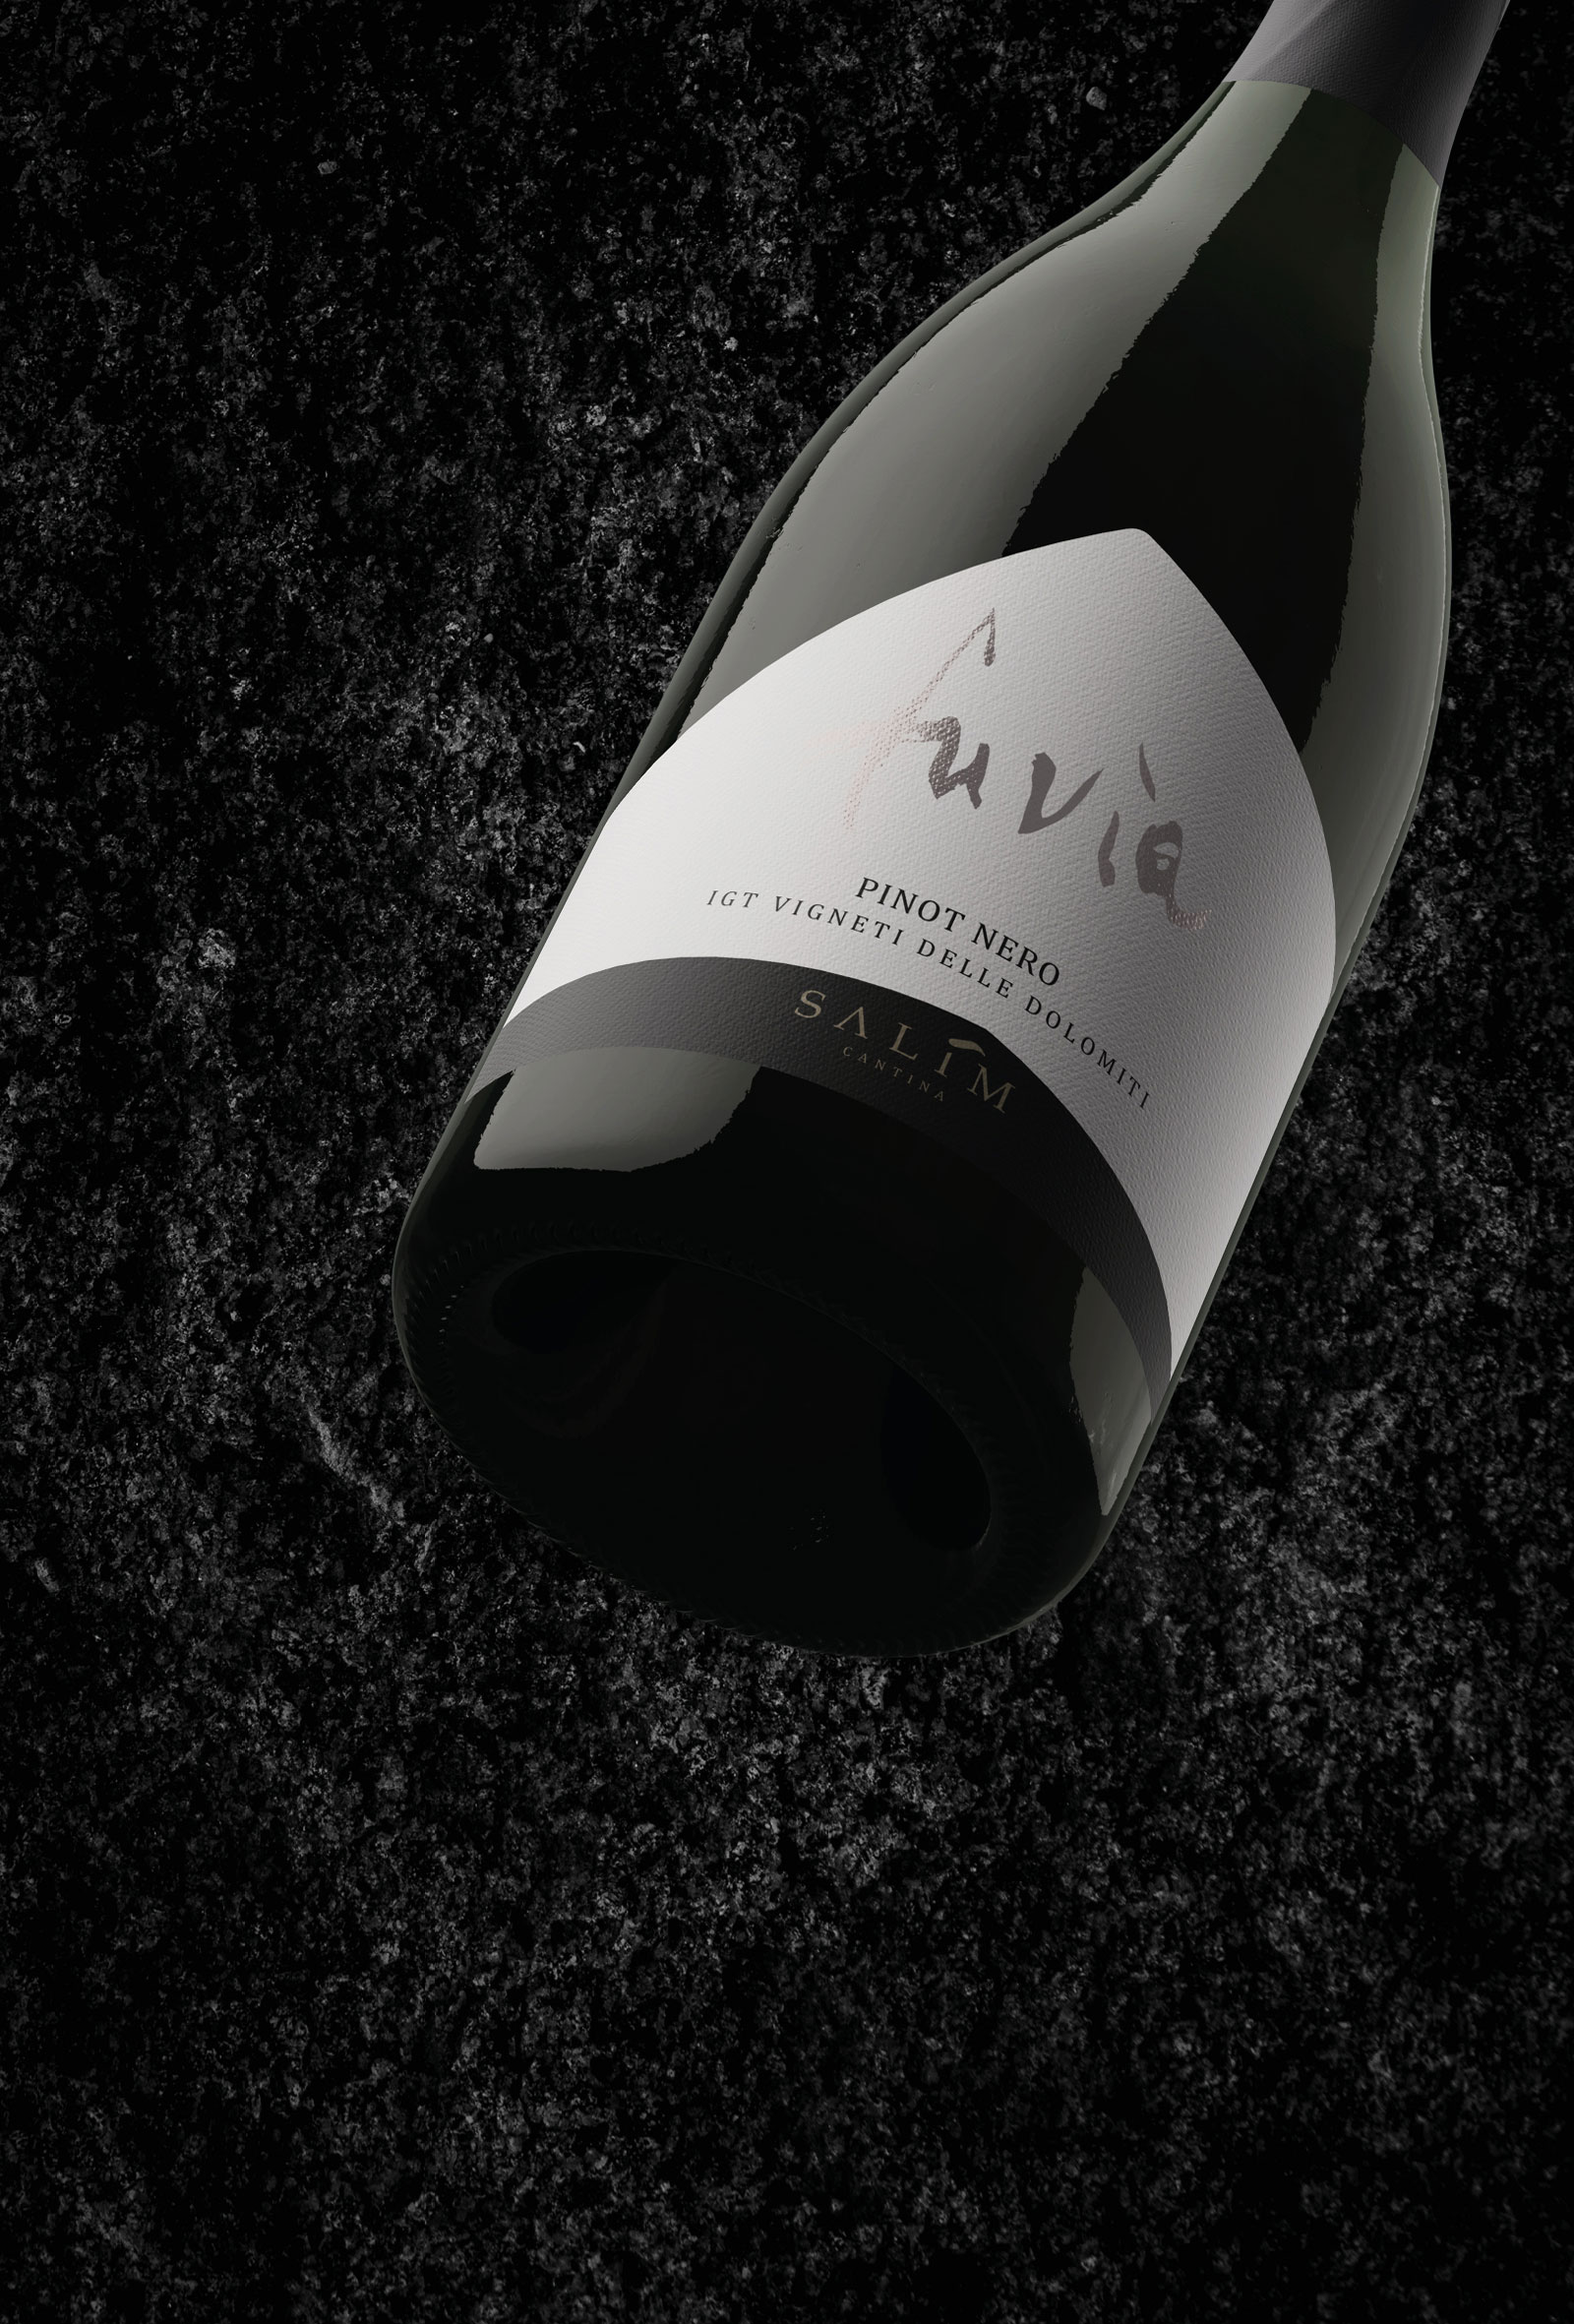 vista ravvicinata dettaglio etichetta vino rosso fuvia, progettata dallo studio grafico diade arco trento per cantina salim